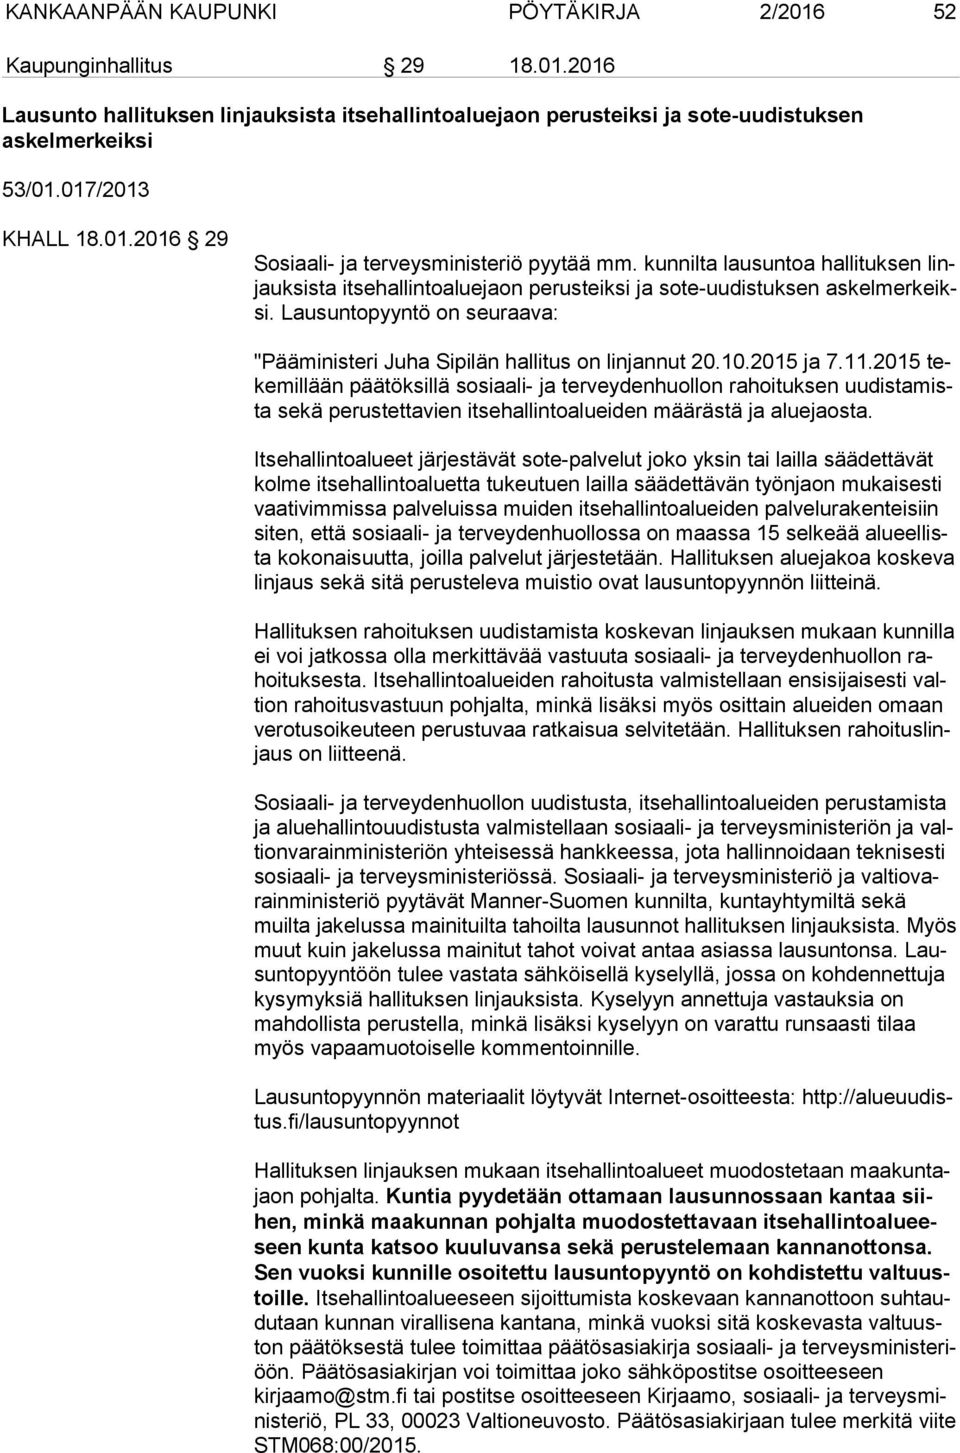 Lausuntopyyntö on seuraava: "Pääministeri Juha Sipilän hallitus on linjannut 20.10.2015 ja 7.11.